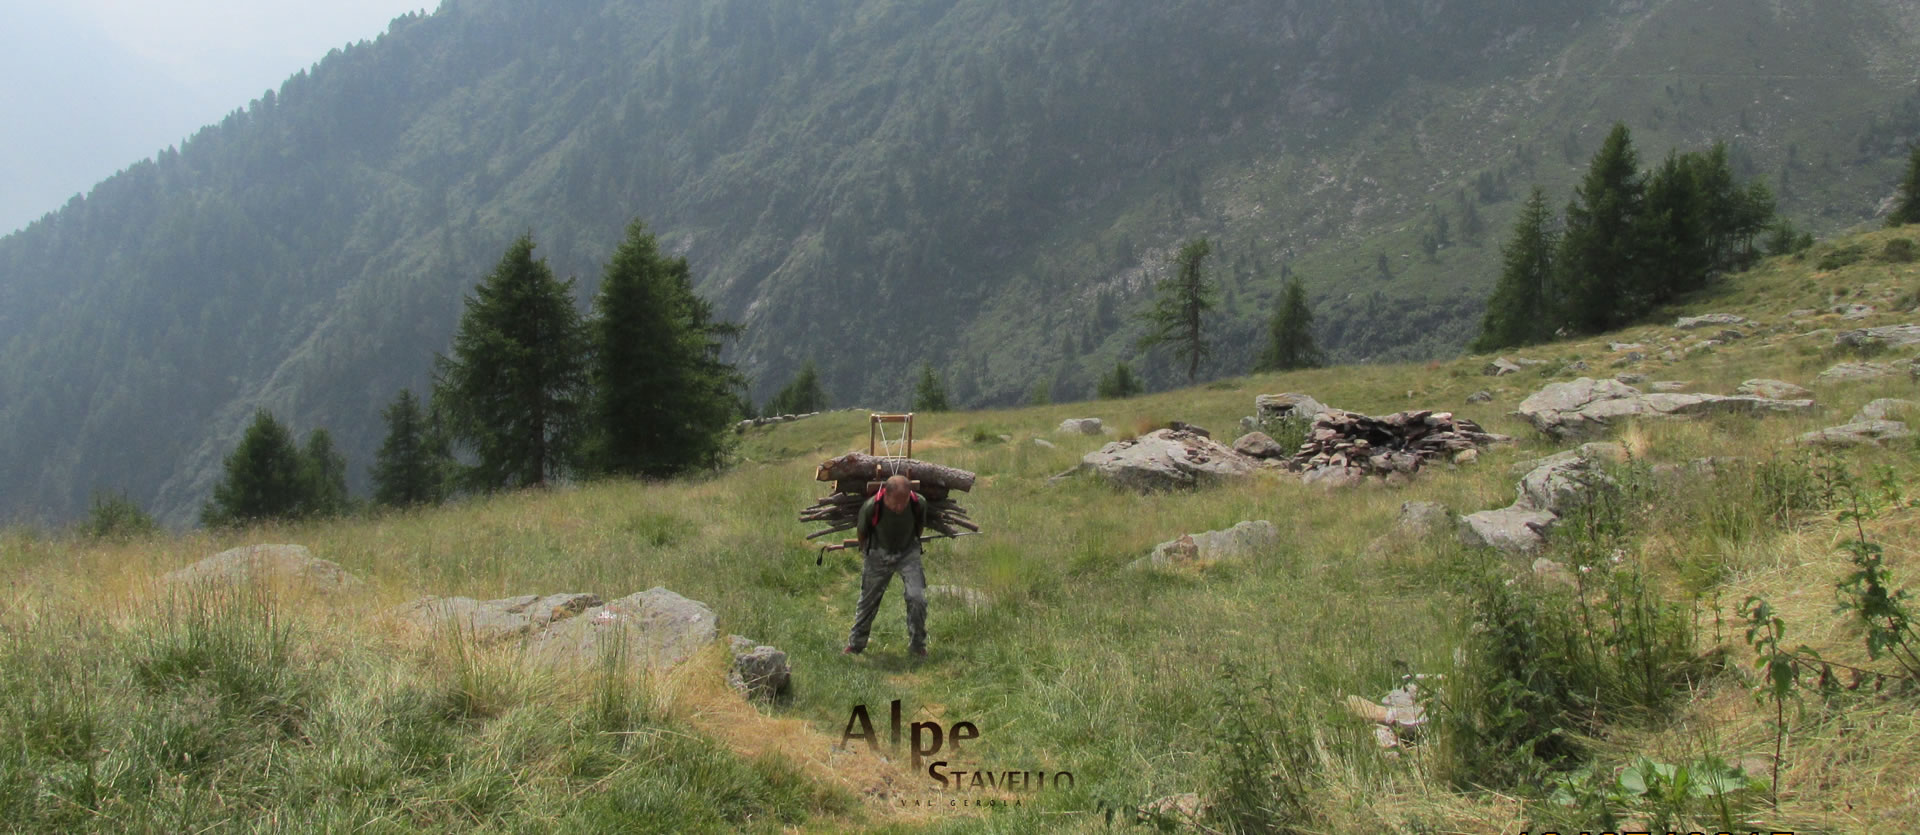 Lavori agricoli in Alpe - Alpe Stavello